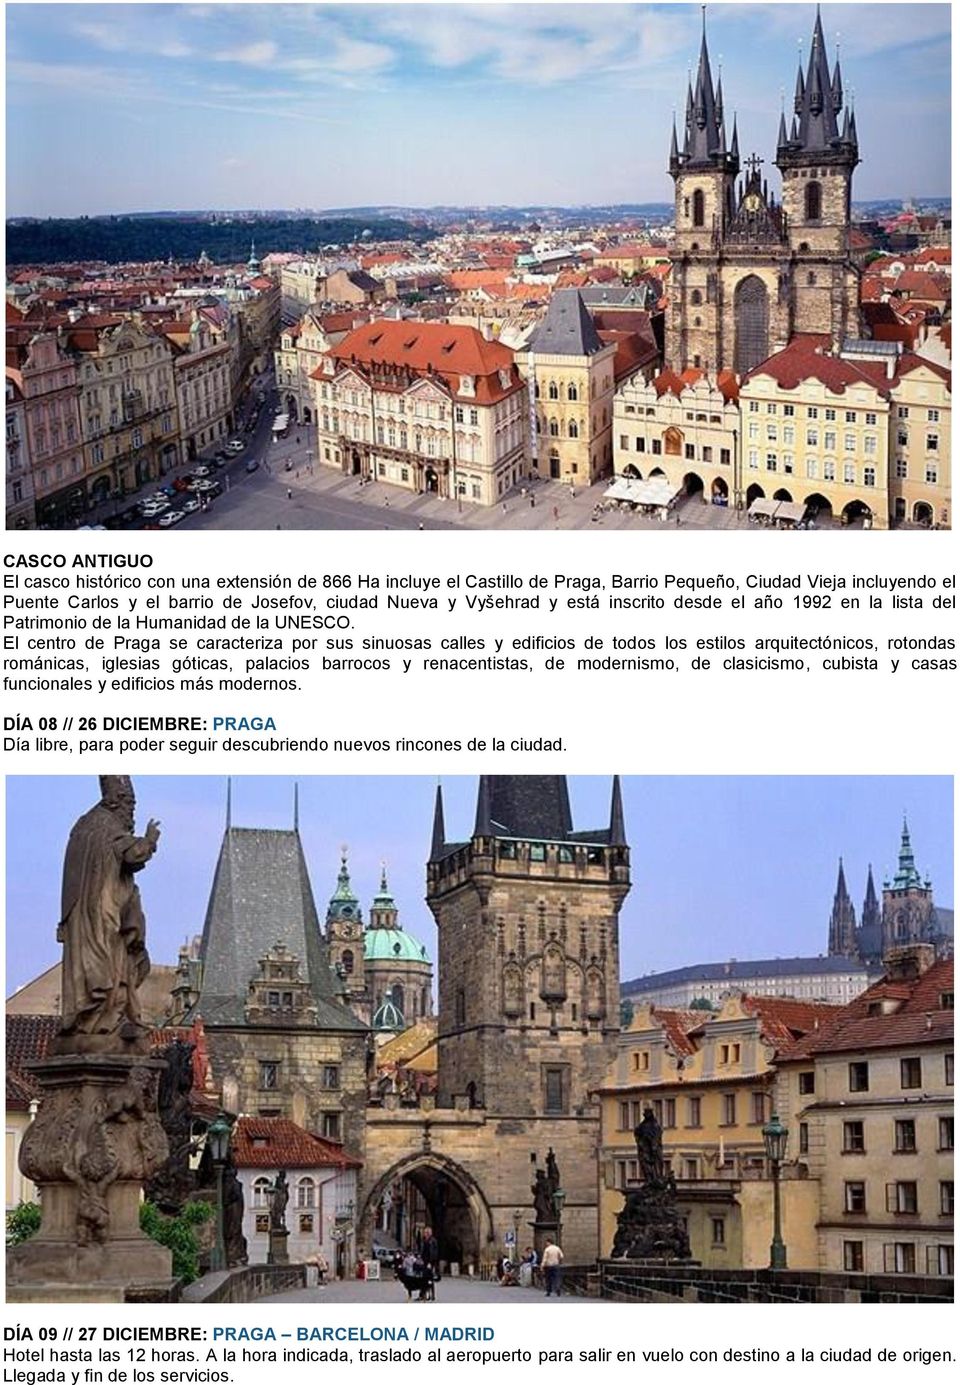 El centro de Praga se caracteriza por sus sinuosas calles y edificios de todos los estilos arquitectónicos, rotondas románicas, iglesias góticas, palacios barrocos y renacentistas, de modernismo, de